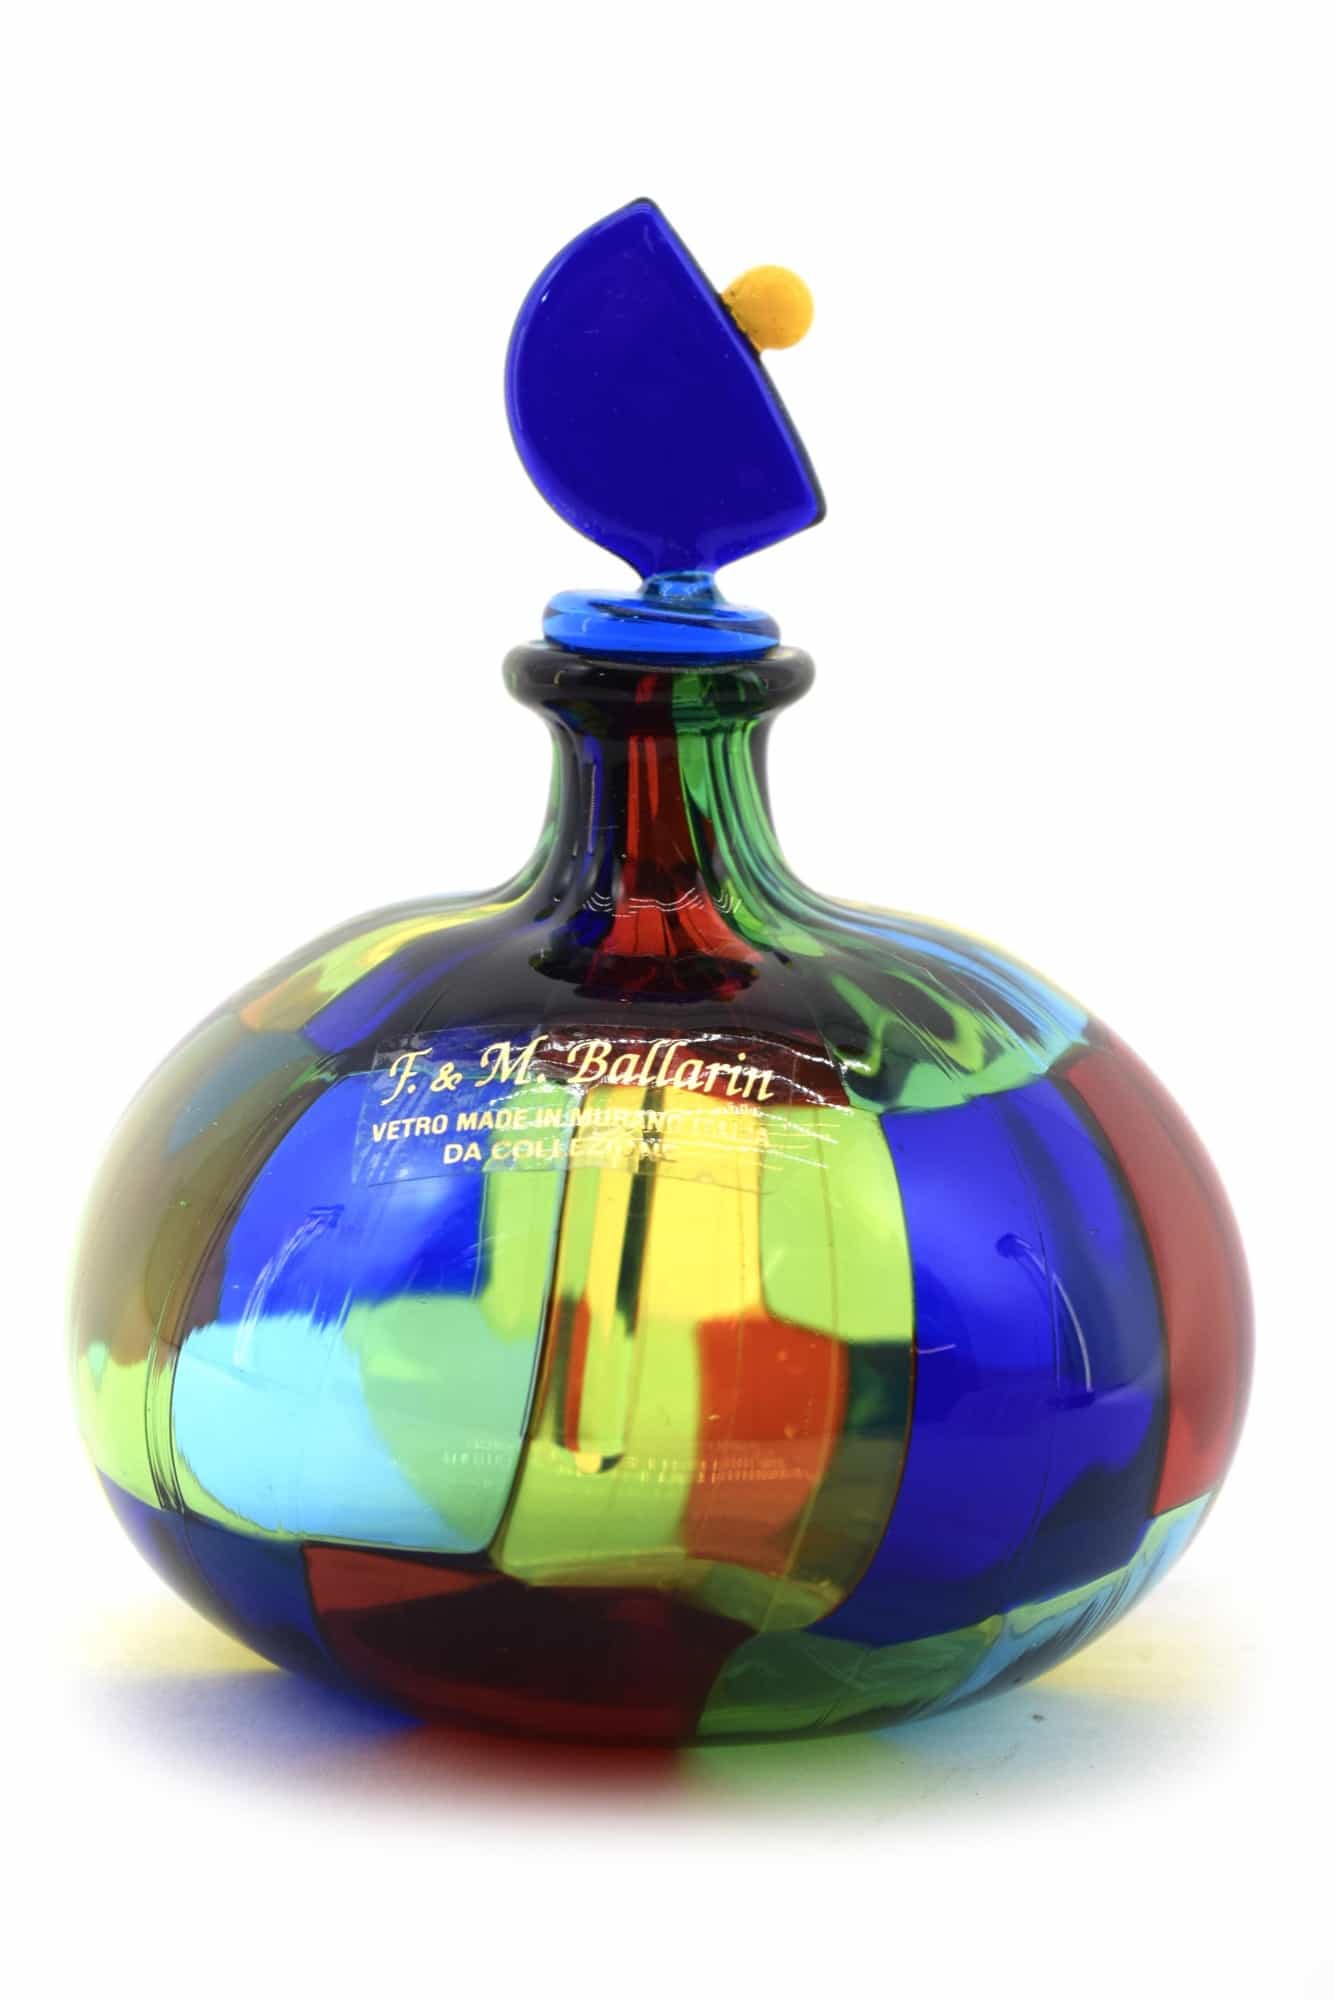 dappled murano glass bottle